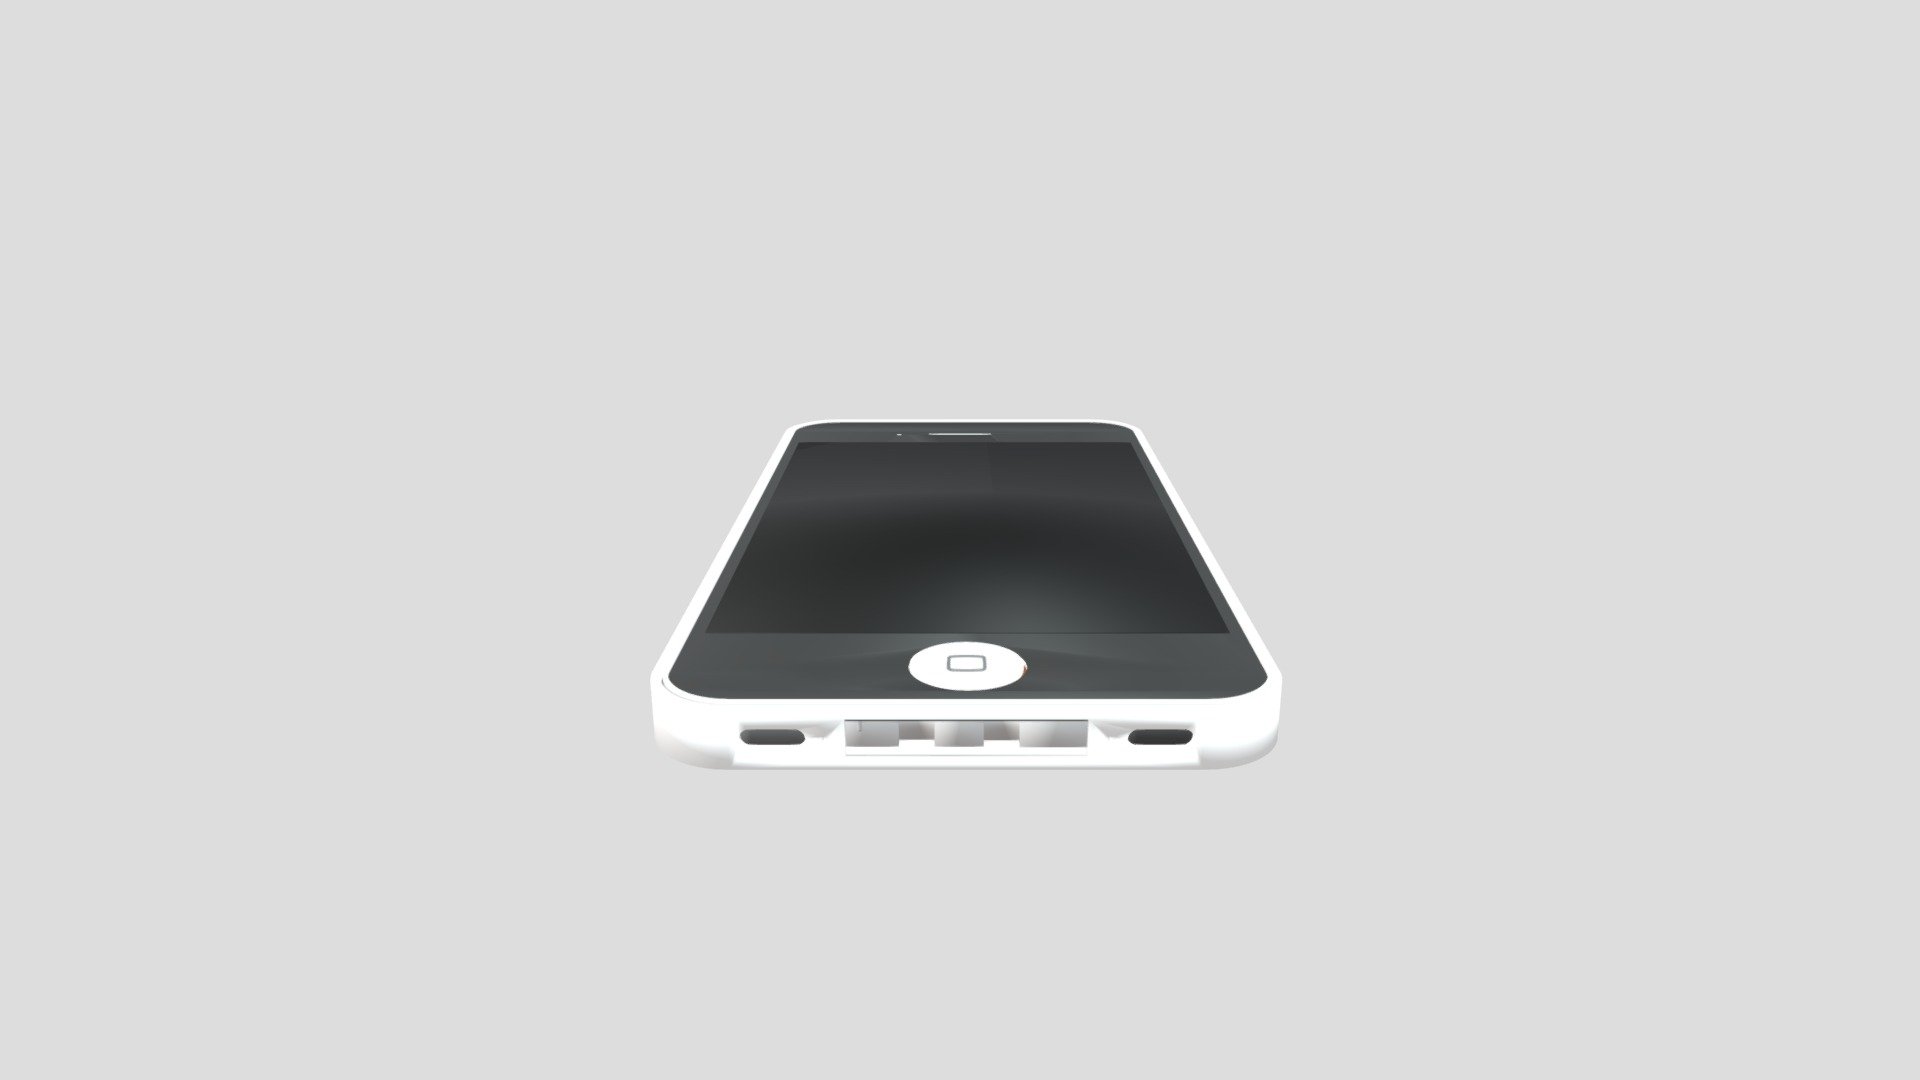 Iphone 4/4s démontage - 3D model by yanh.bordes [5e02733] - Sketchfab